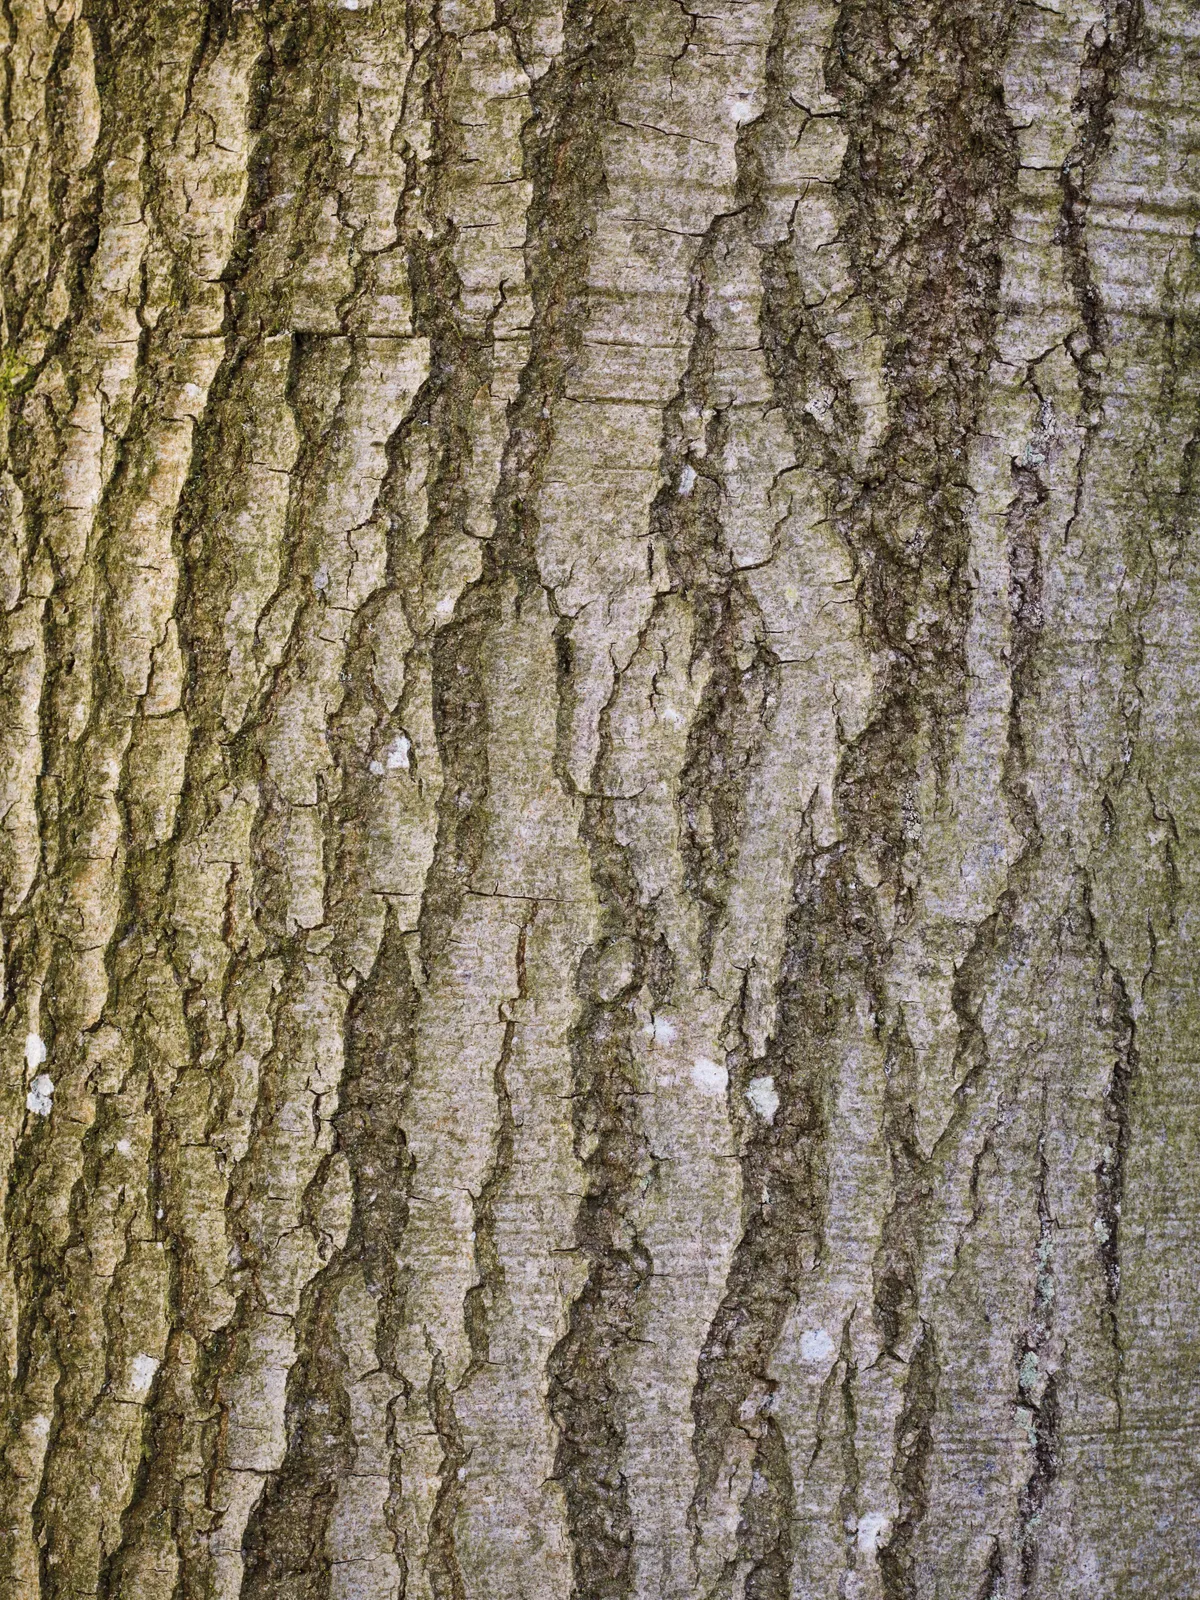 Fagus Sylvatica (Common beech)